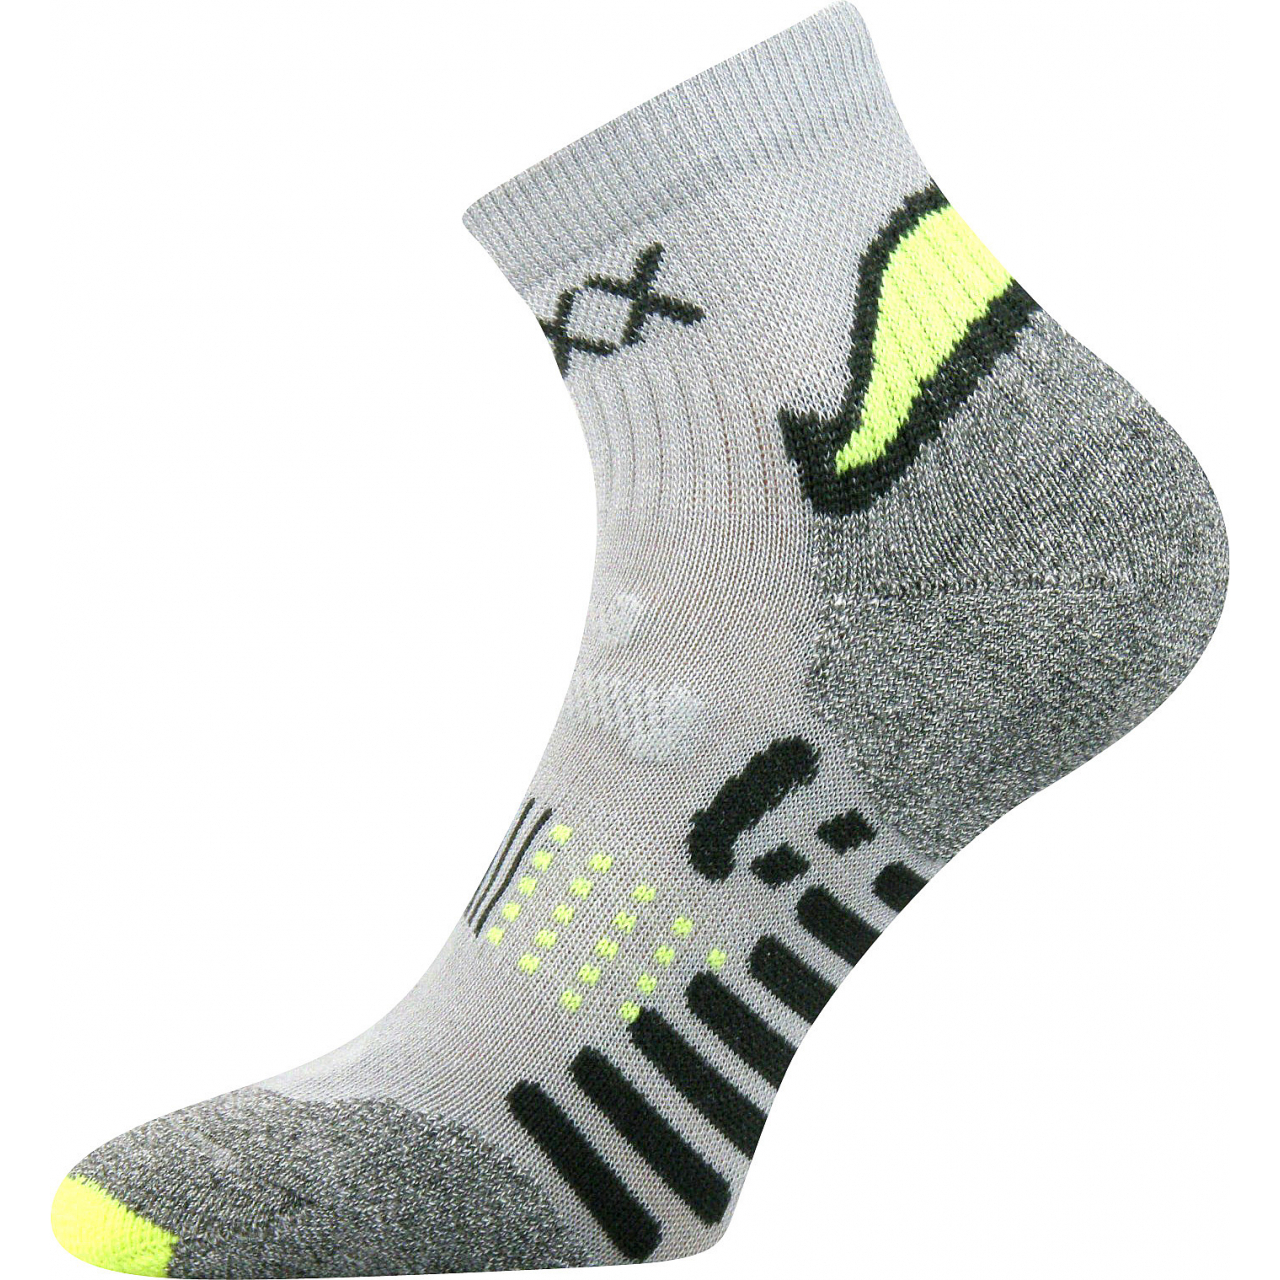 Ponožky unisex sportovní Voxx Integra - šedé-žluté, 43-46